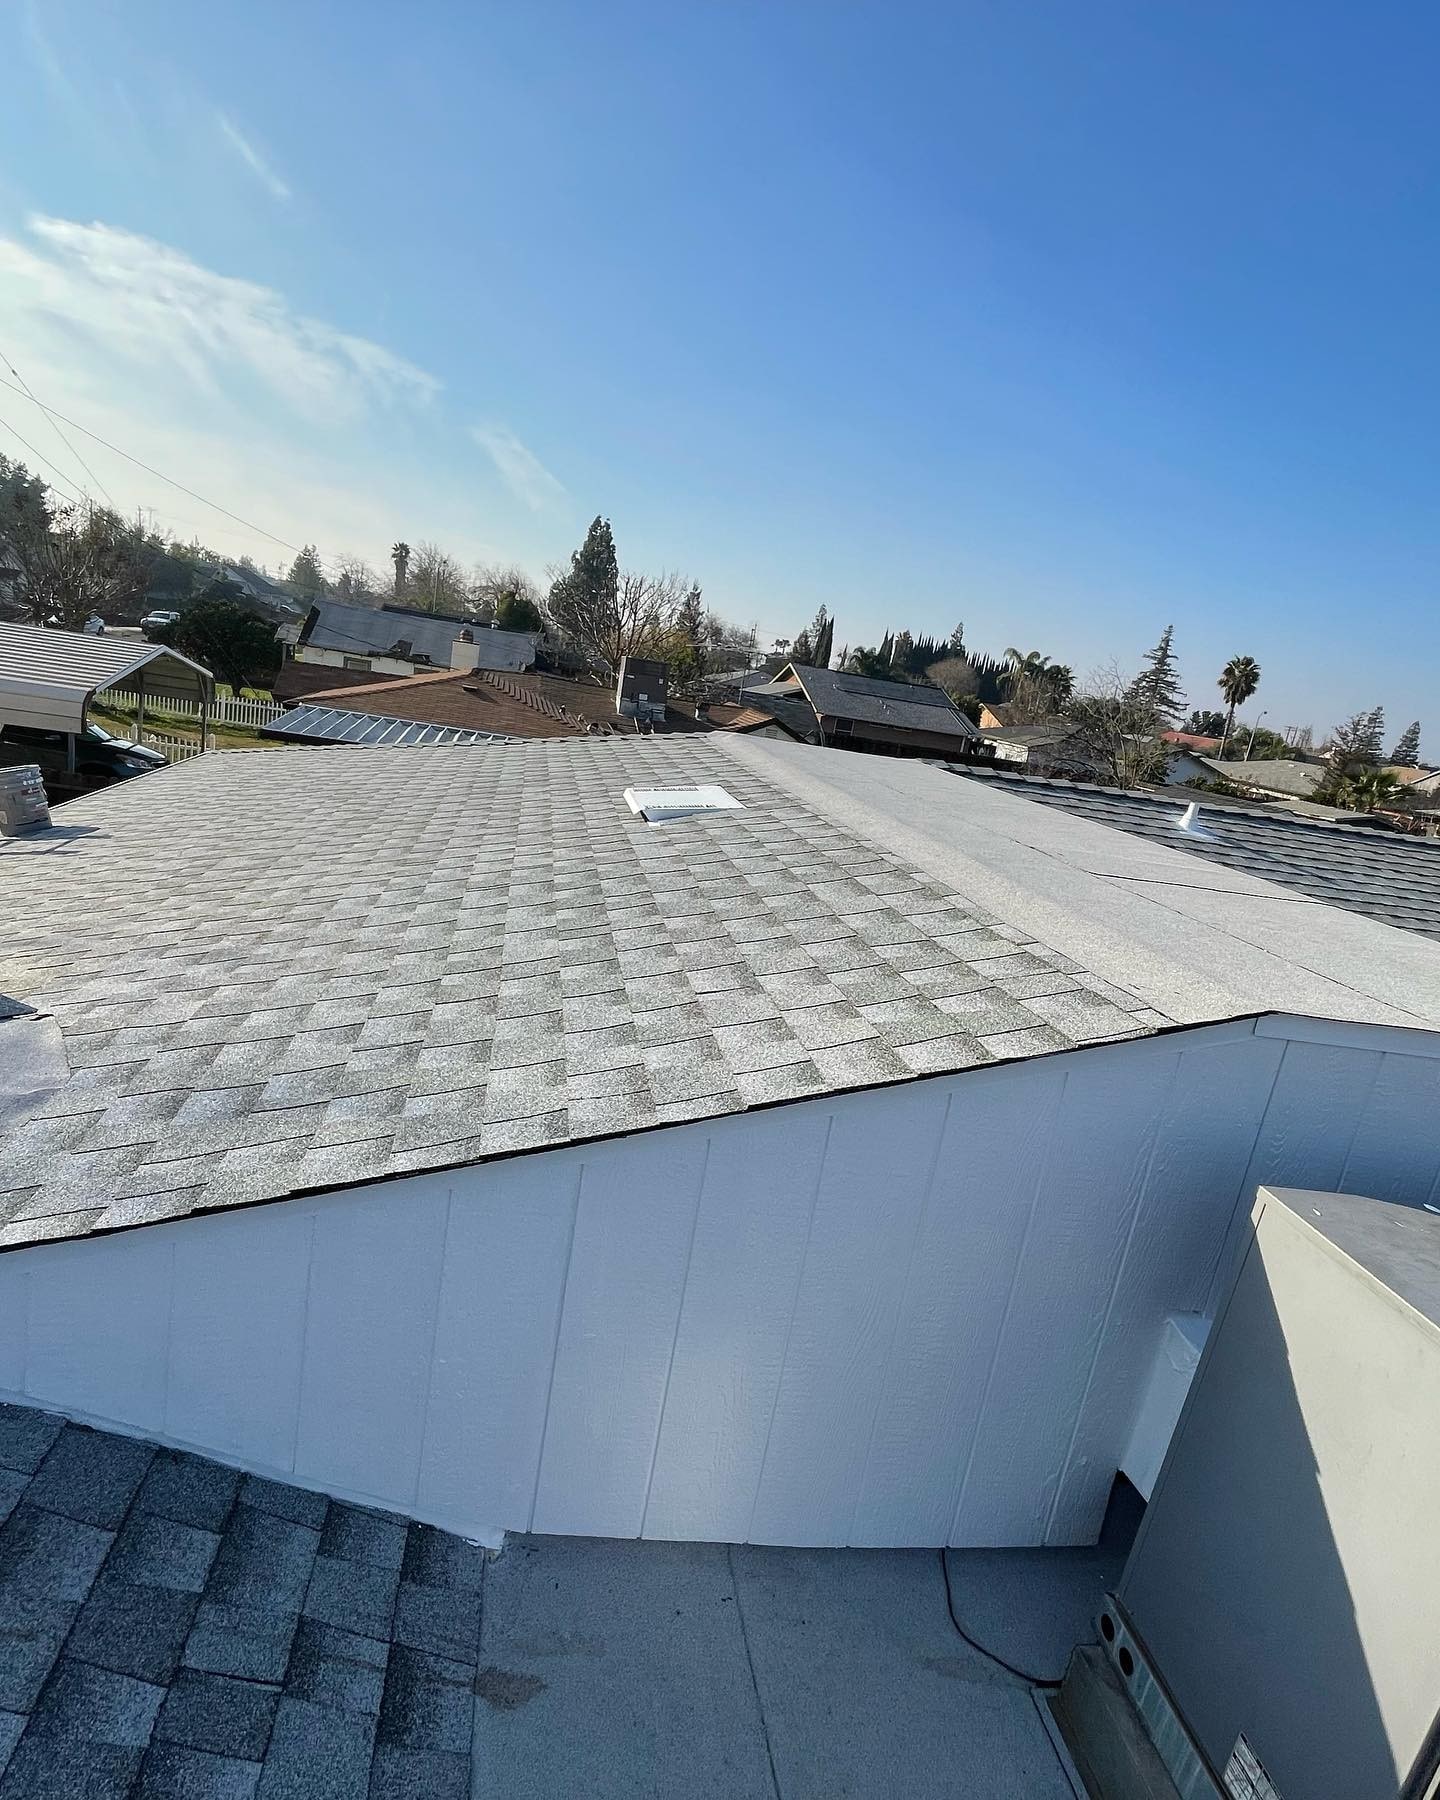 Roof replacement in Santa Clara, CA